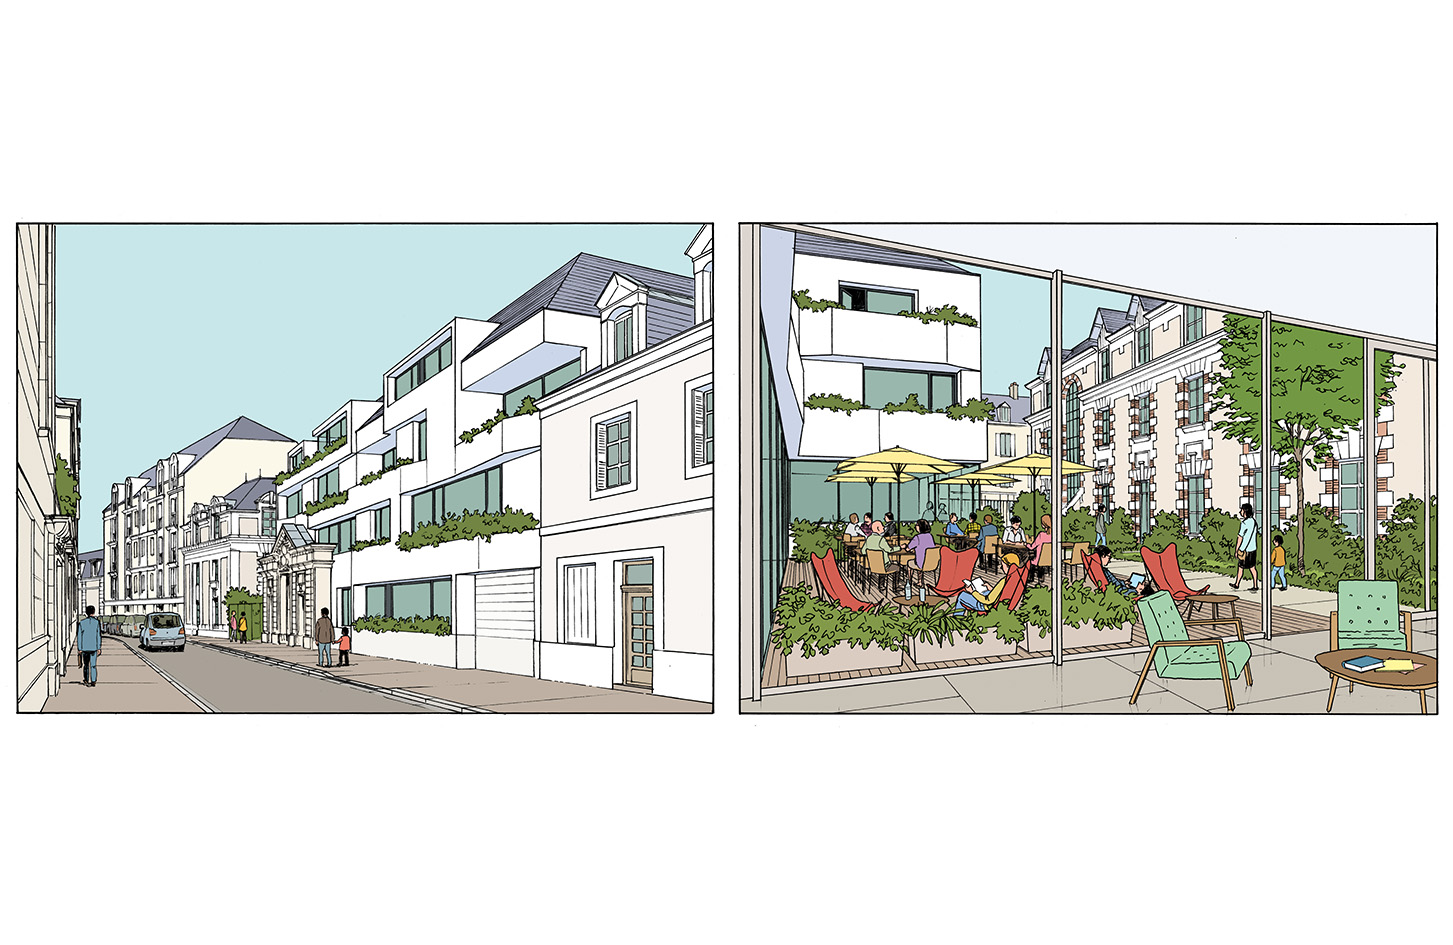 Concours pour un immeuble de logements à Angers - Catherine Dormoy architecte - 2016